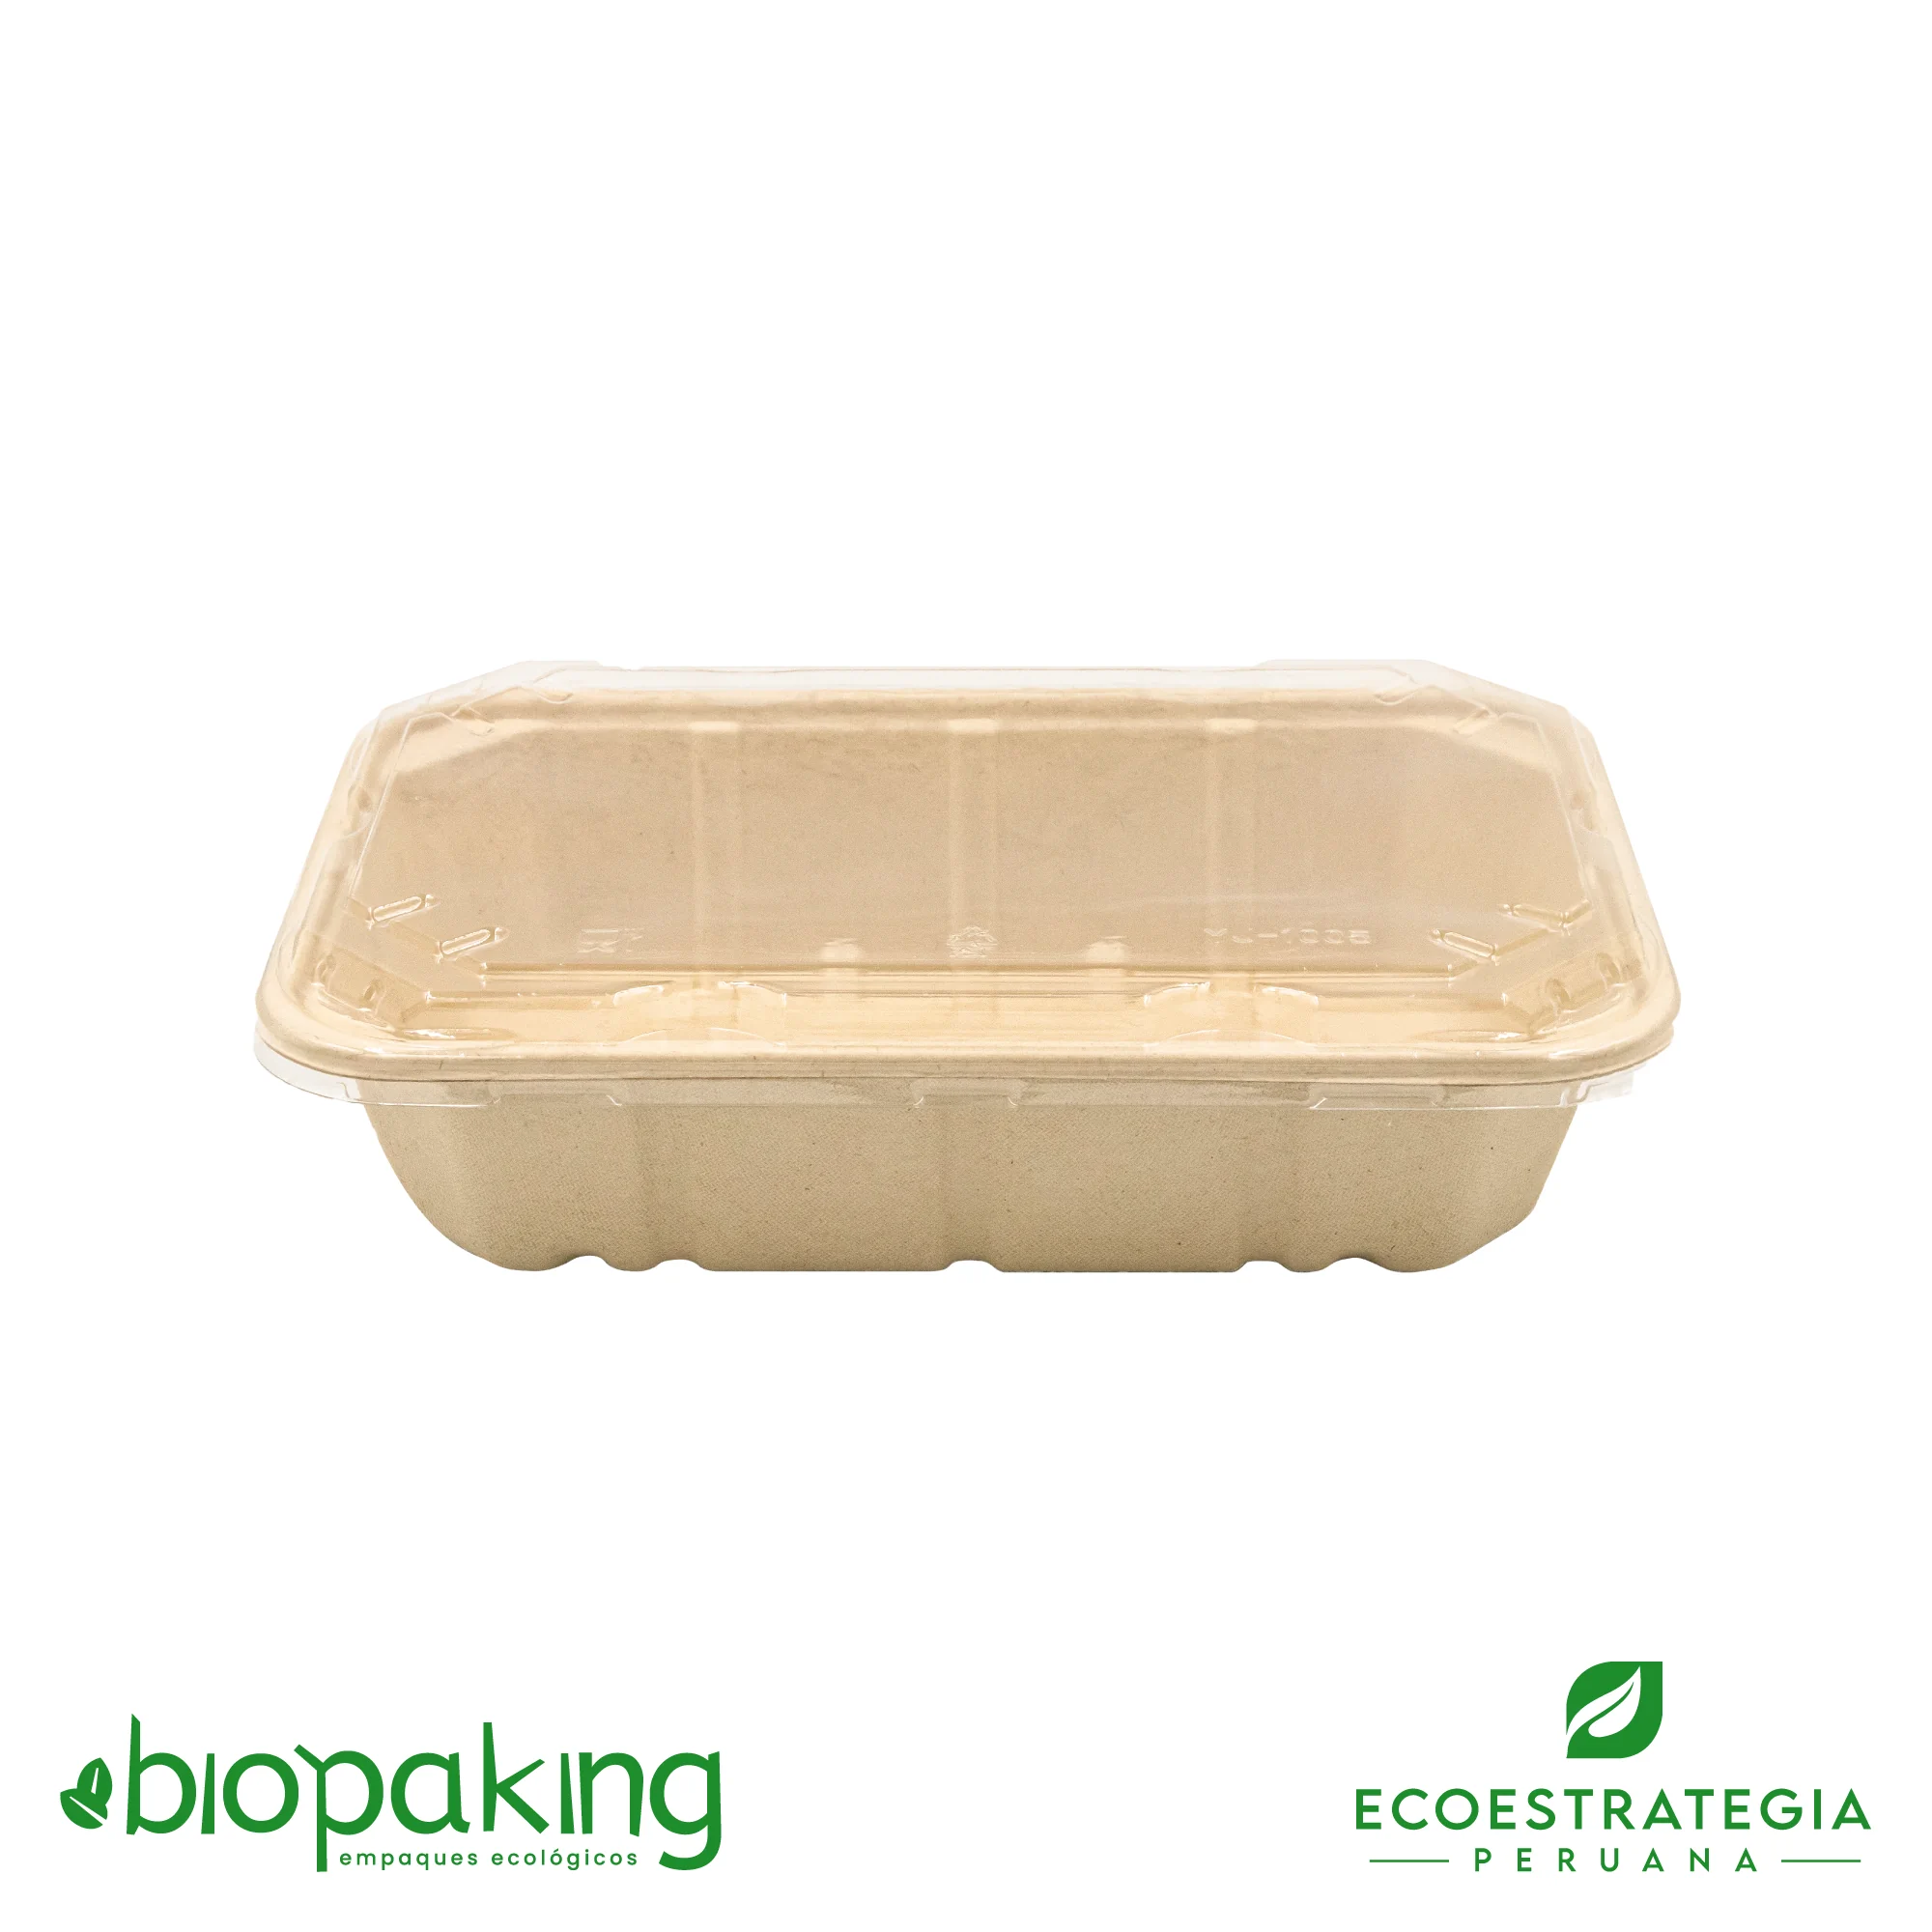 Esta bandeja biodegradable de 1300 ml es a base de fibra de trigo. Envases descartables con gramaje ideal, cotiza tus empaques, platos y tapers ecológicos